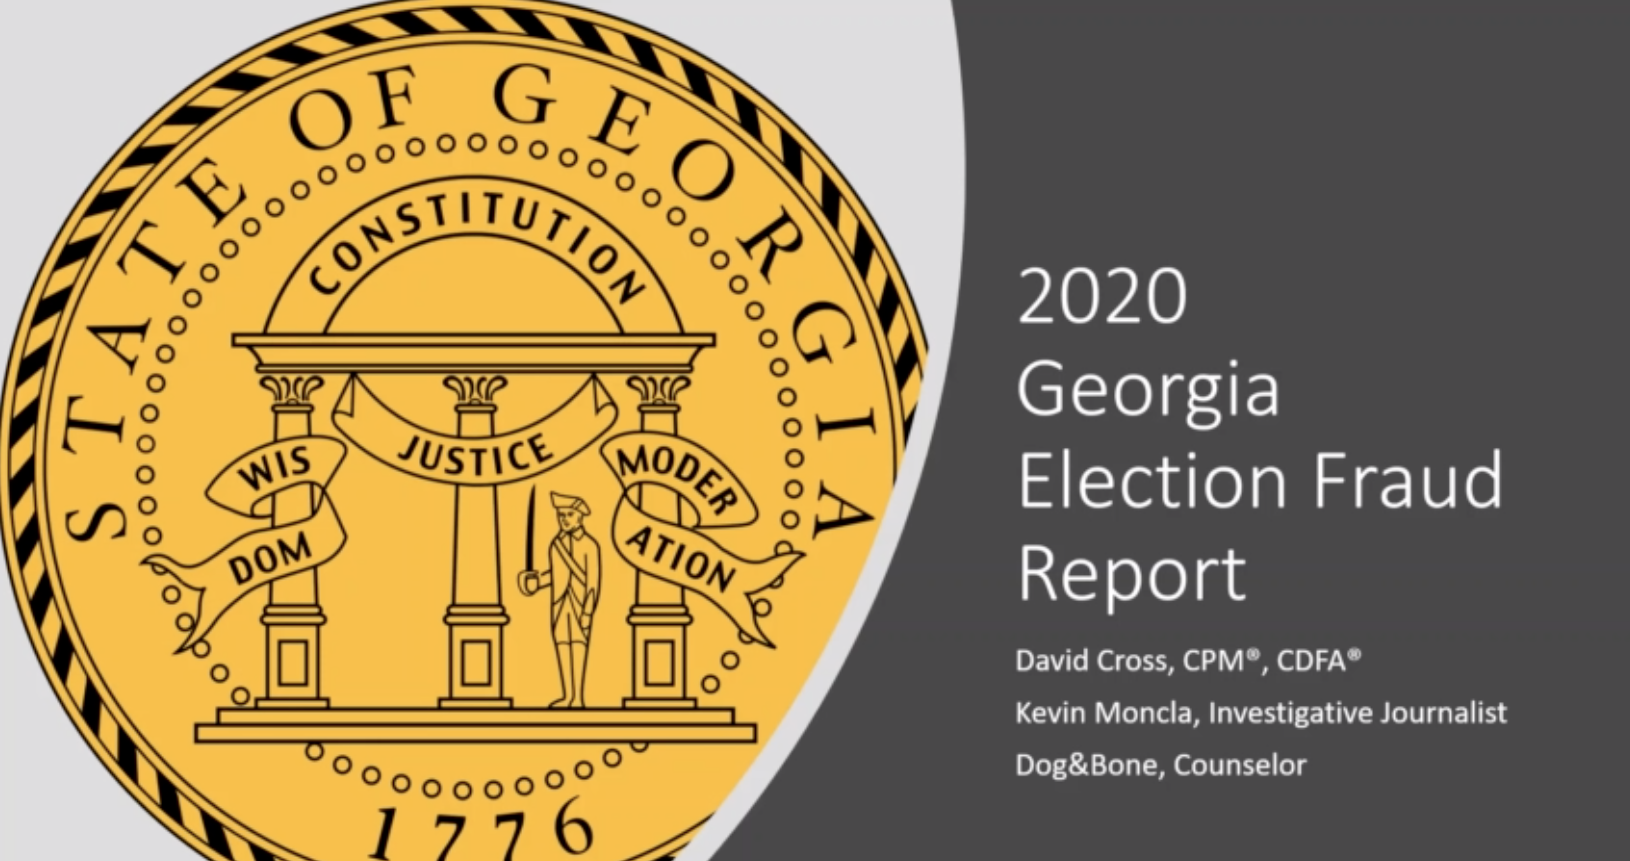 Georgia Election Fraud Report 2020